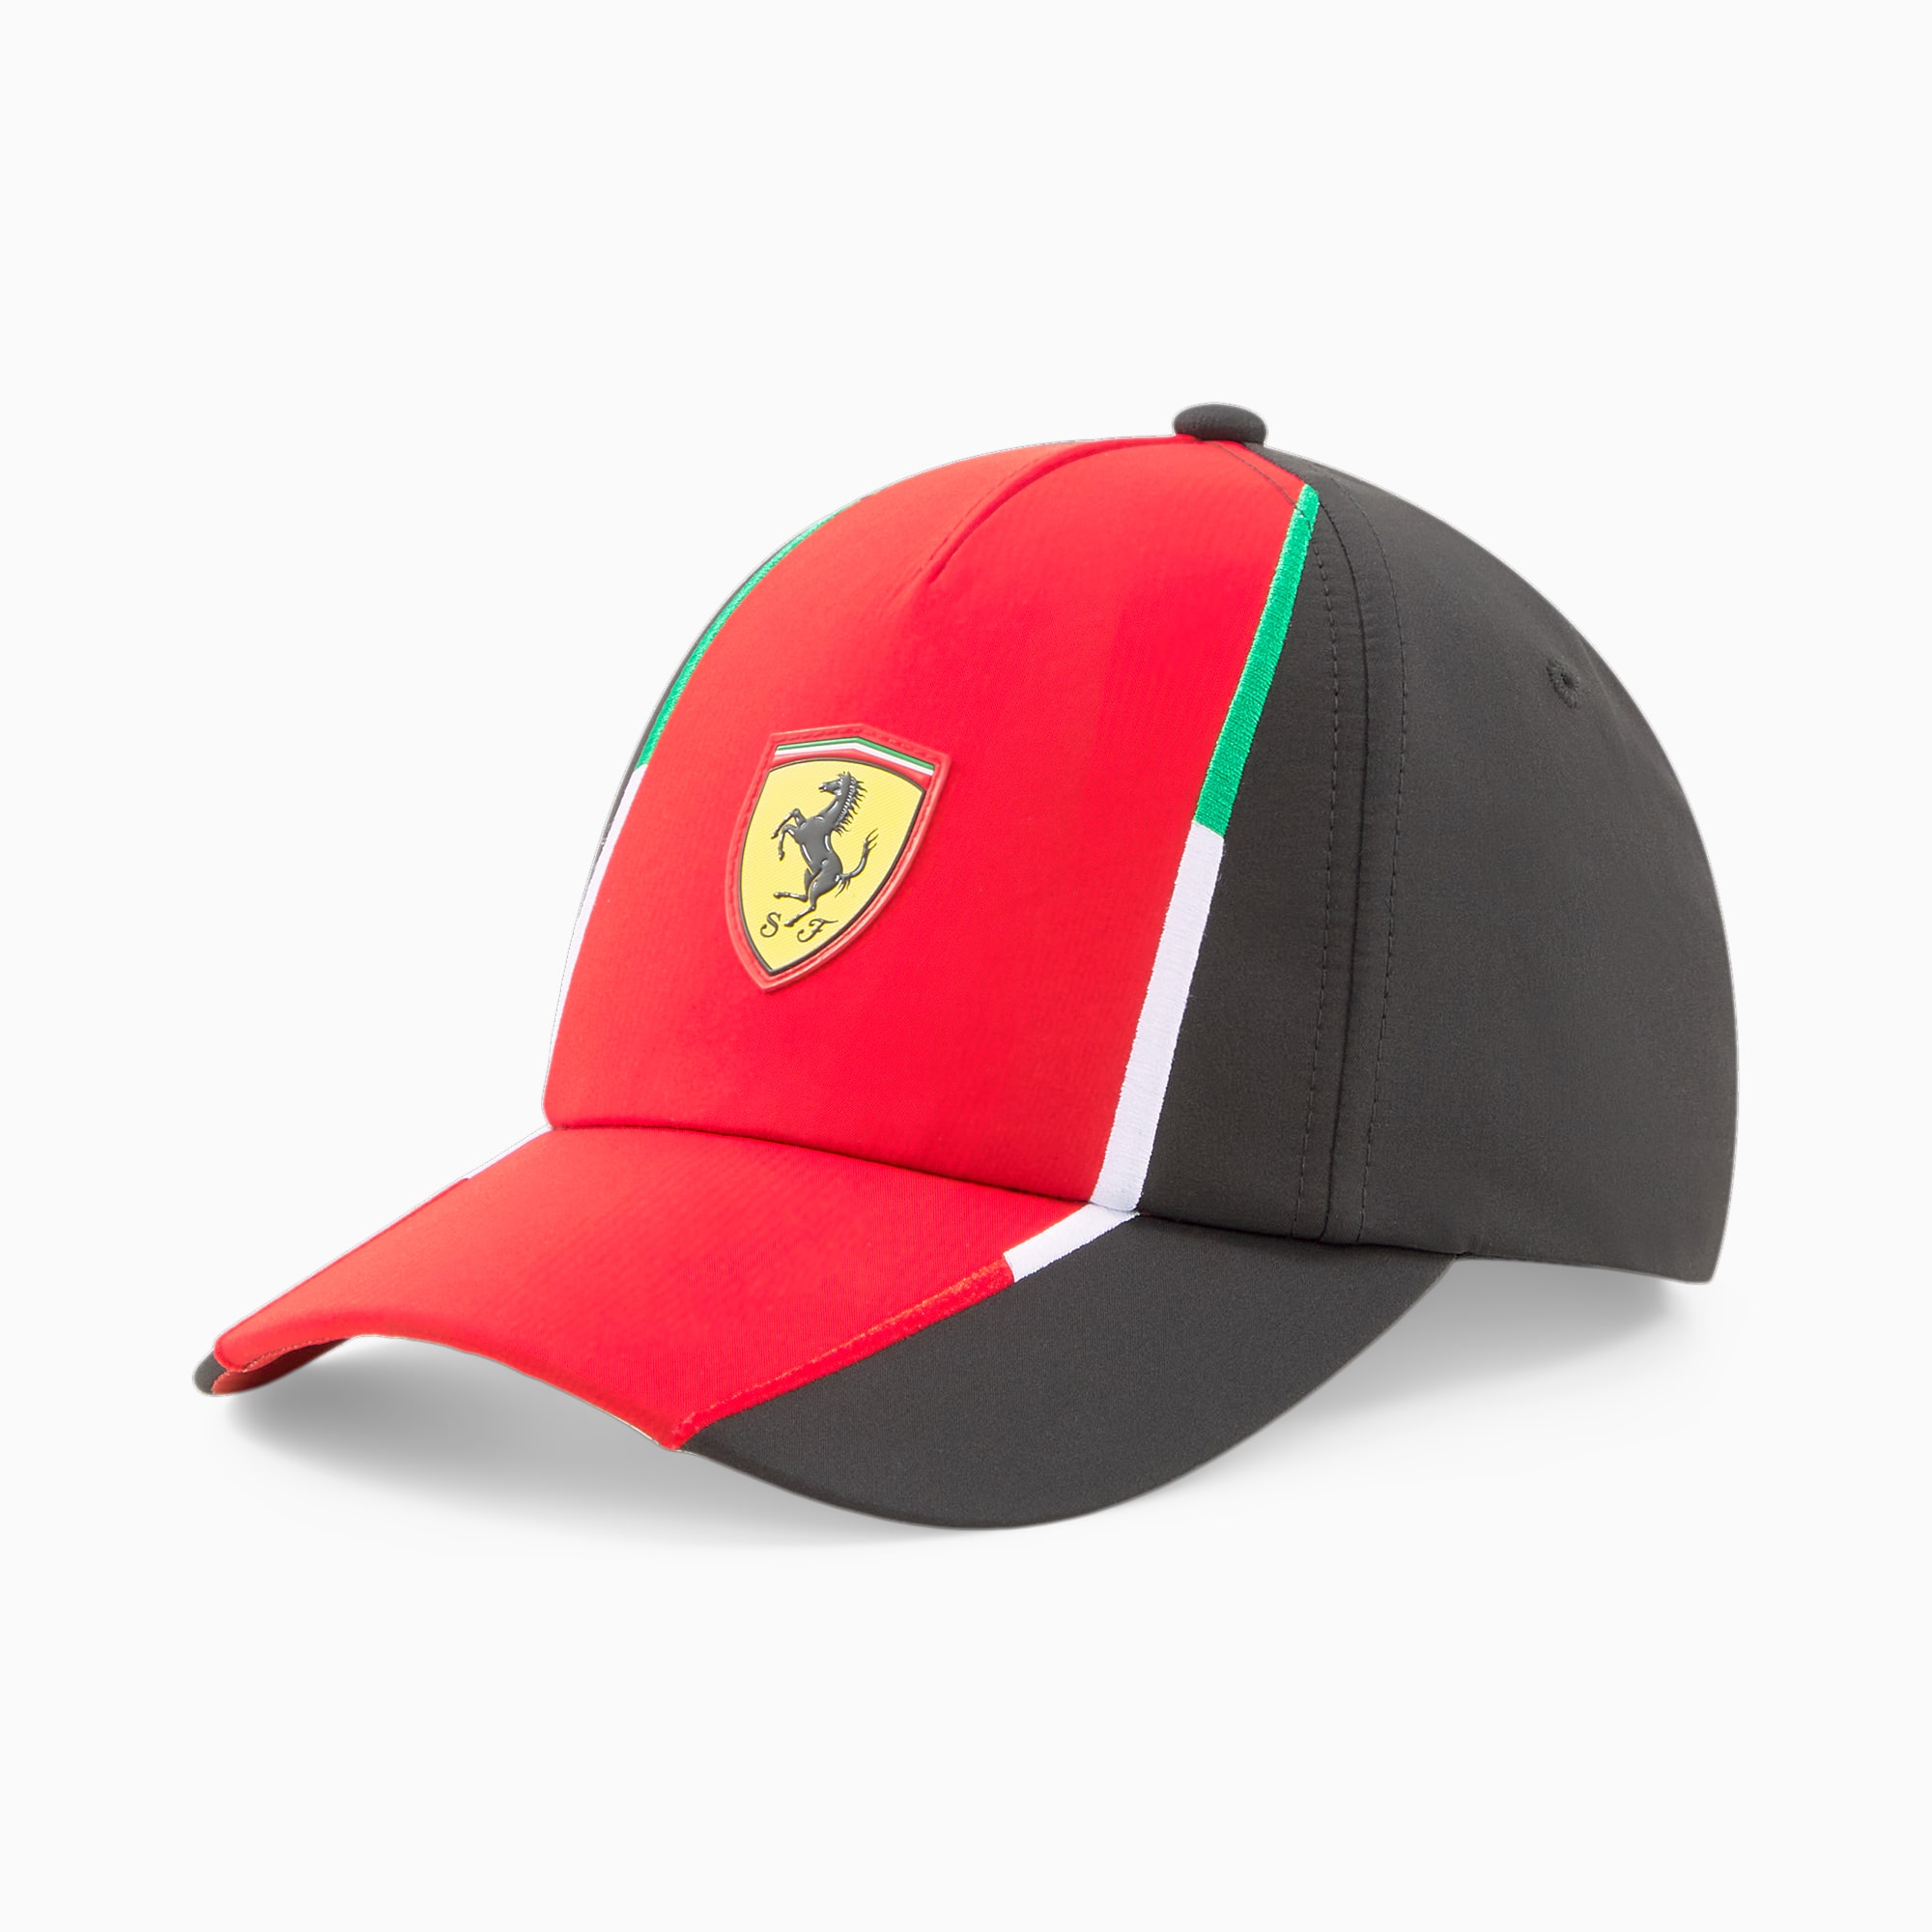 Rep Scuderia Cap Team | PUMA Ferrari